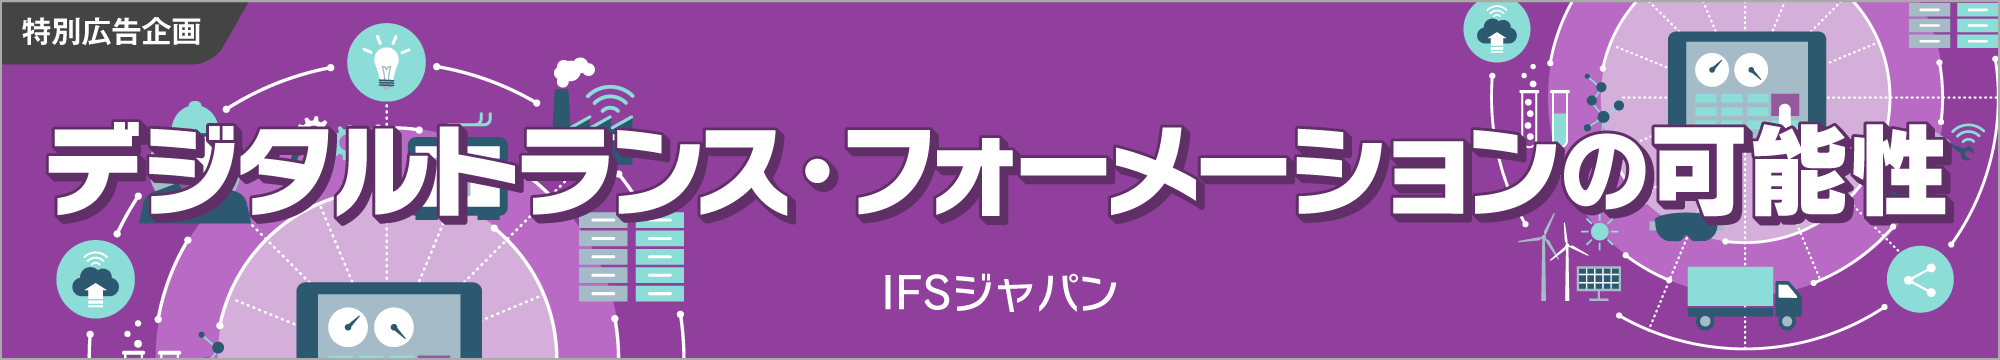 IFSジャパン